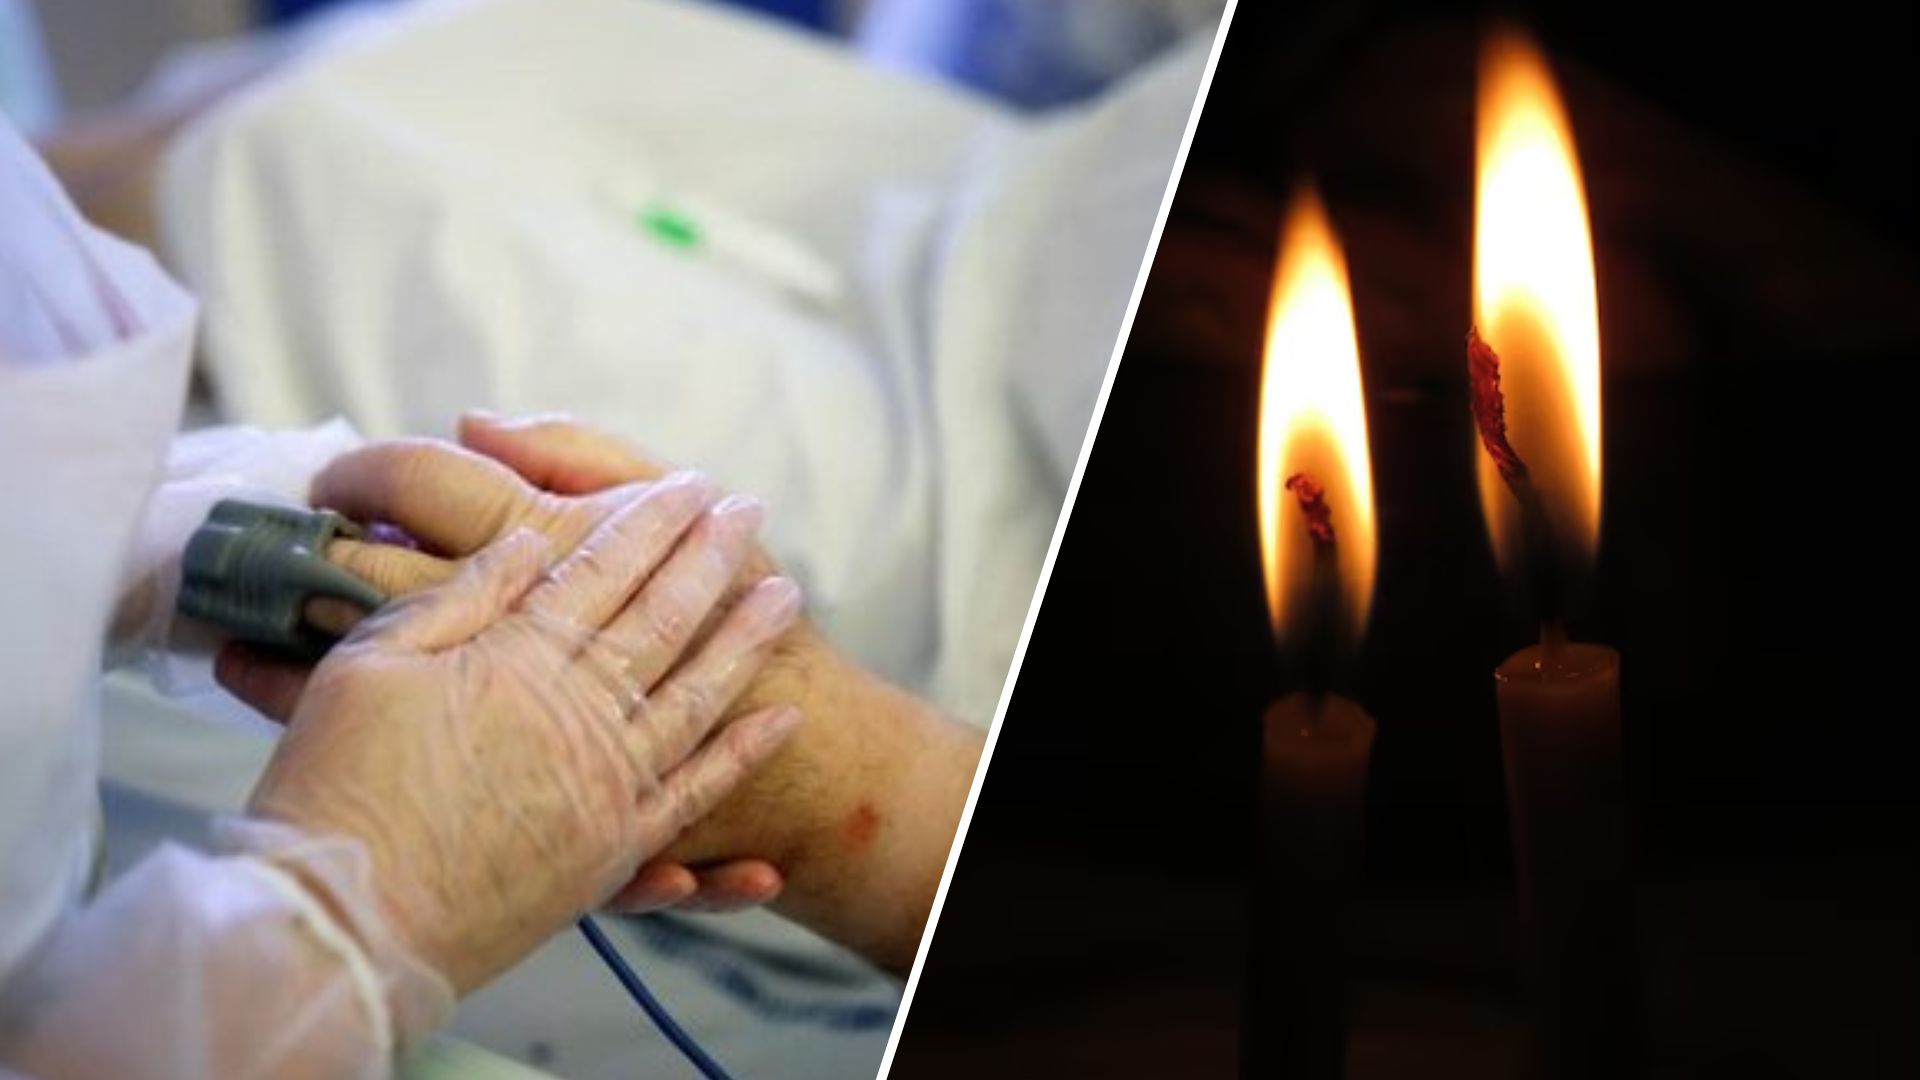 72-летний мужчина из Нидерландов болел Covid-19 в течение 613 дней. Пенсионерка не смогла побороть болезнь и скончалась с рецидивом.